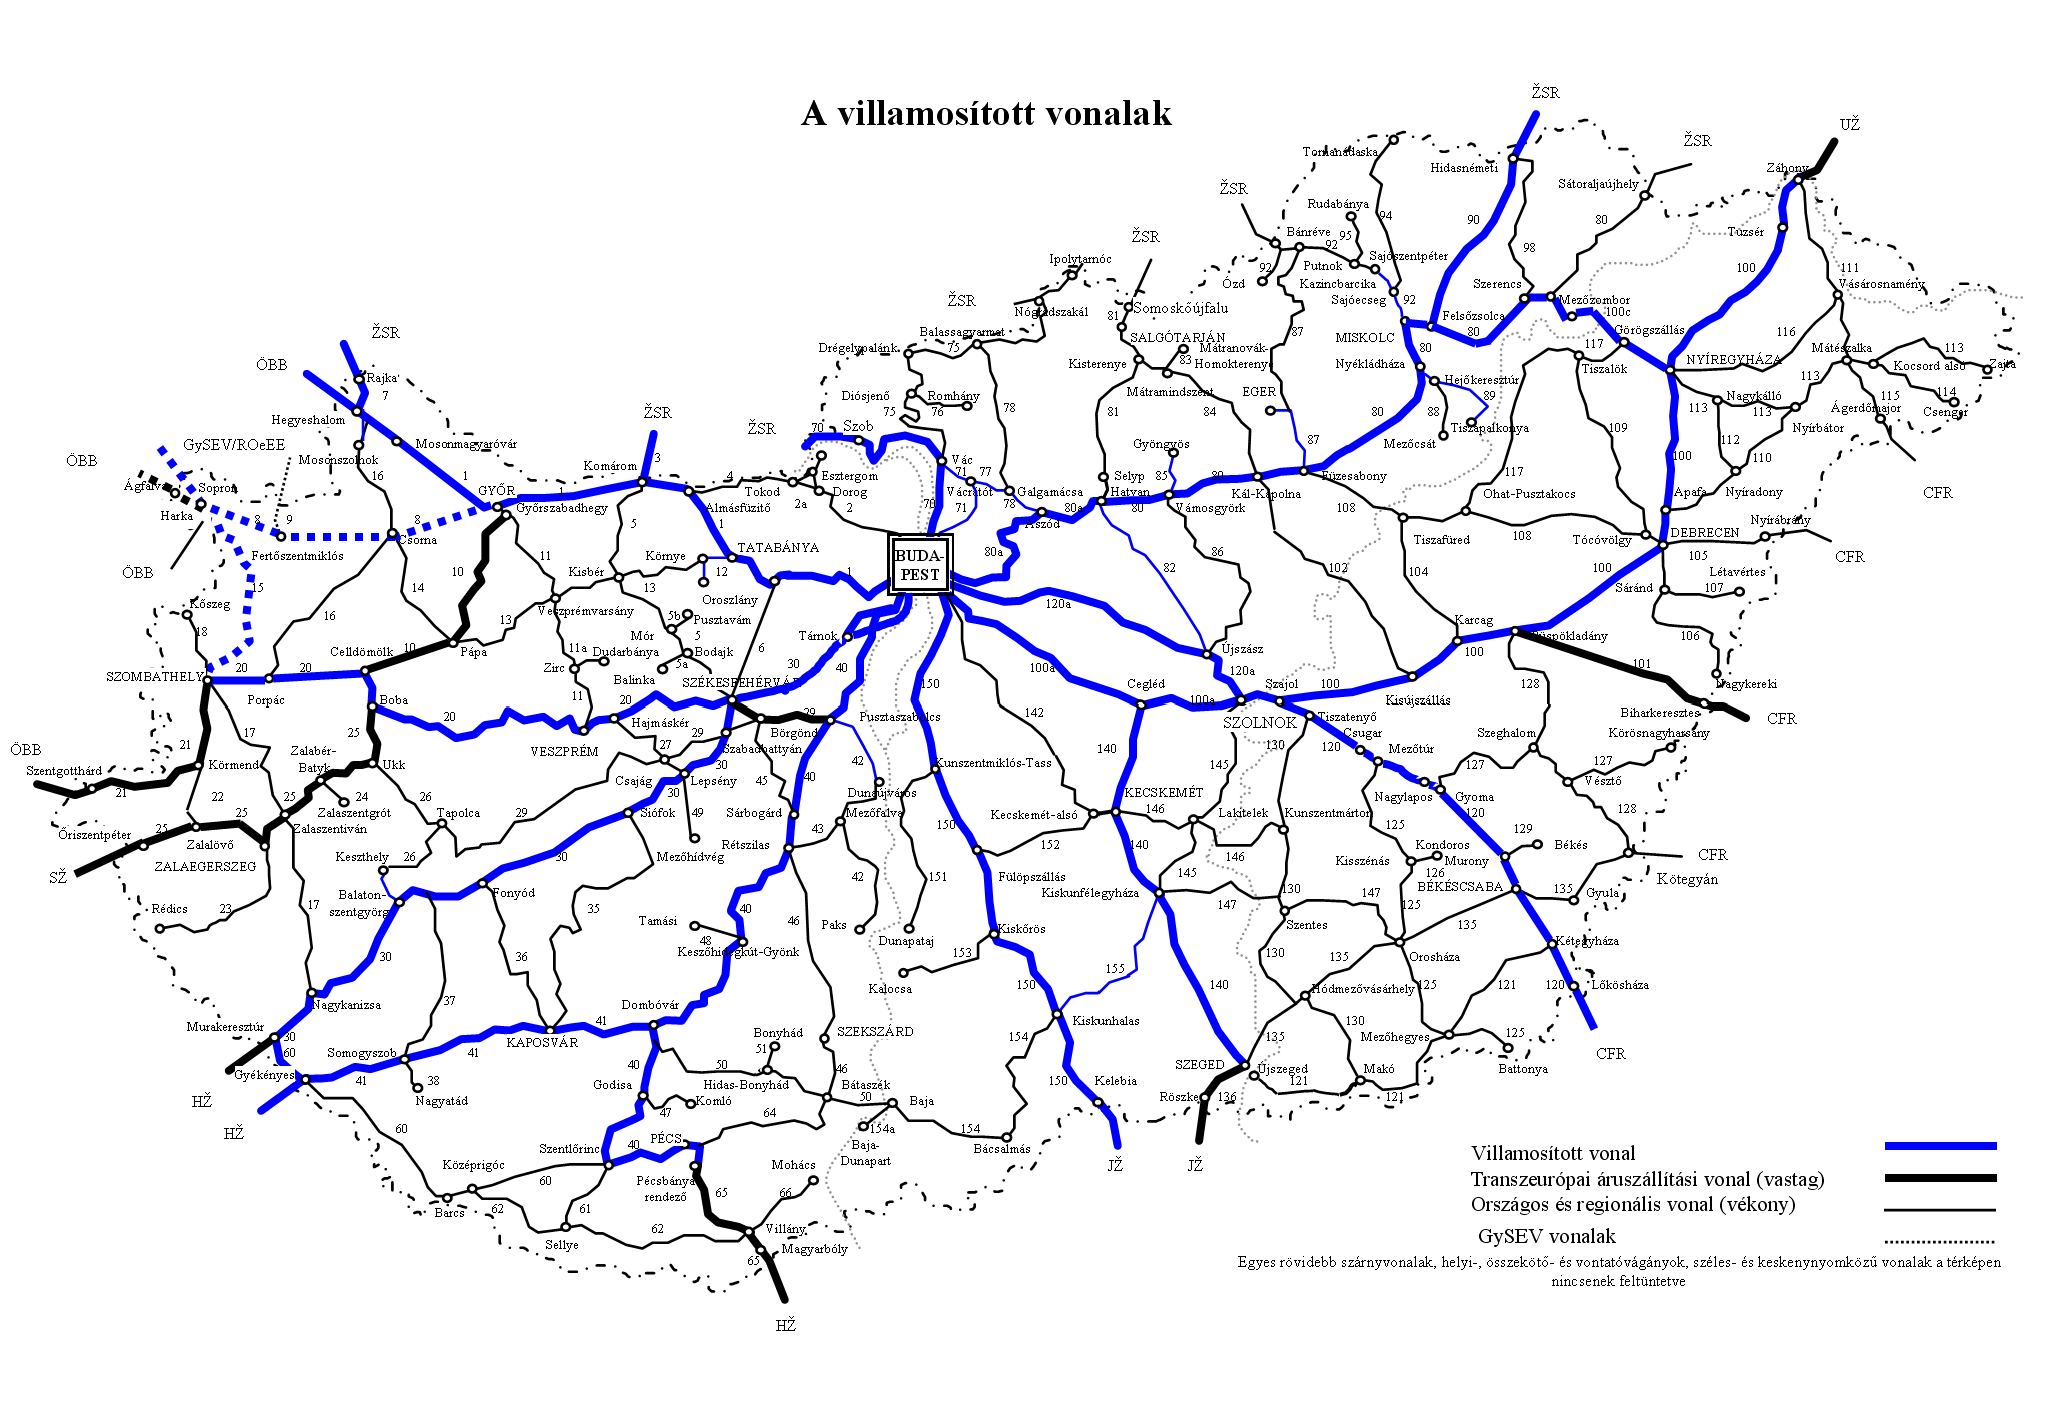 máv vasúti térkép Vasúti térképek   Magyarország vasútállomásai és vasúti megállóhelyei máv vasúti térkép